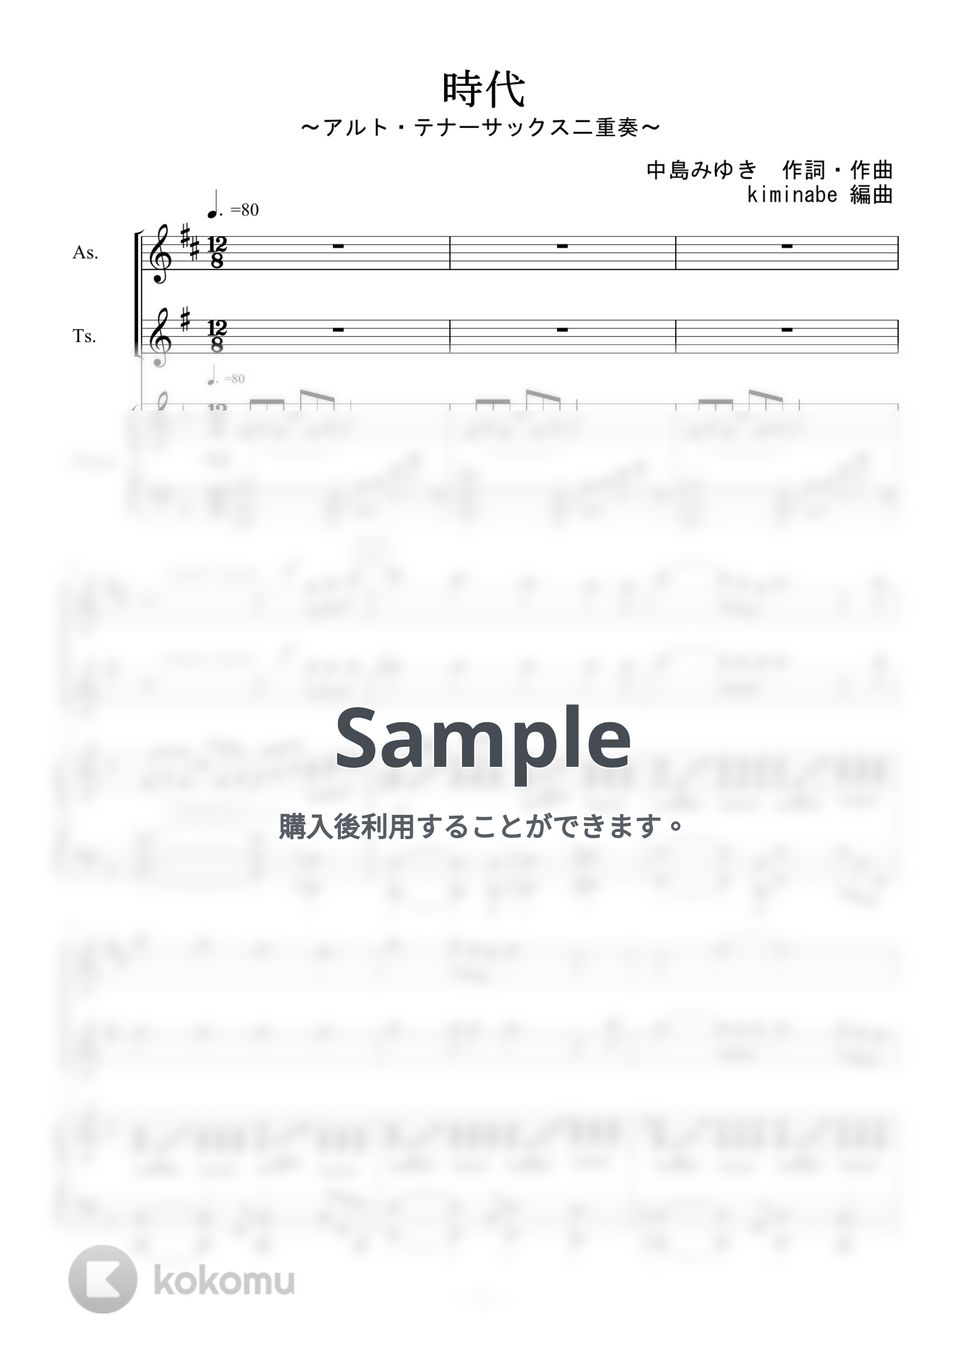 中島みゆき - 時代 (アルト・テナーサックス二重奏) by kiminabe